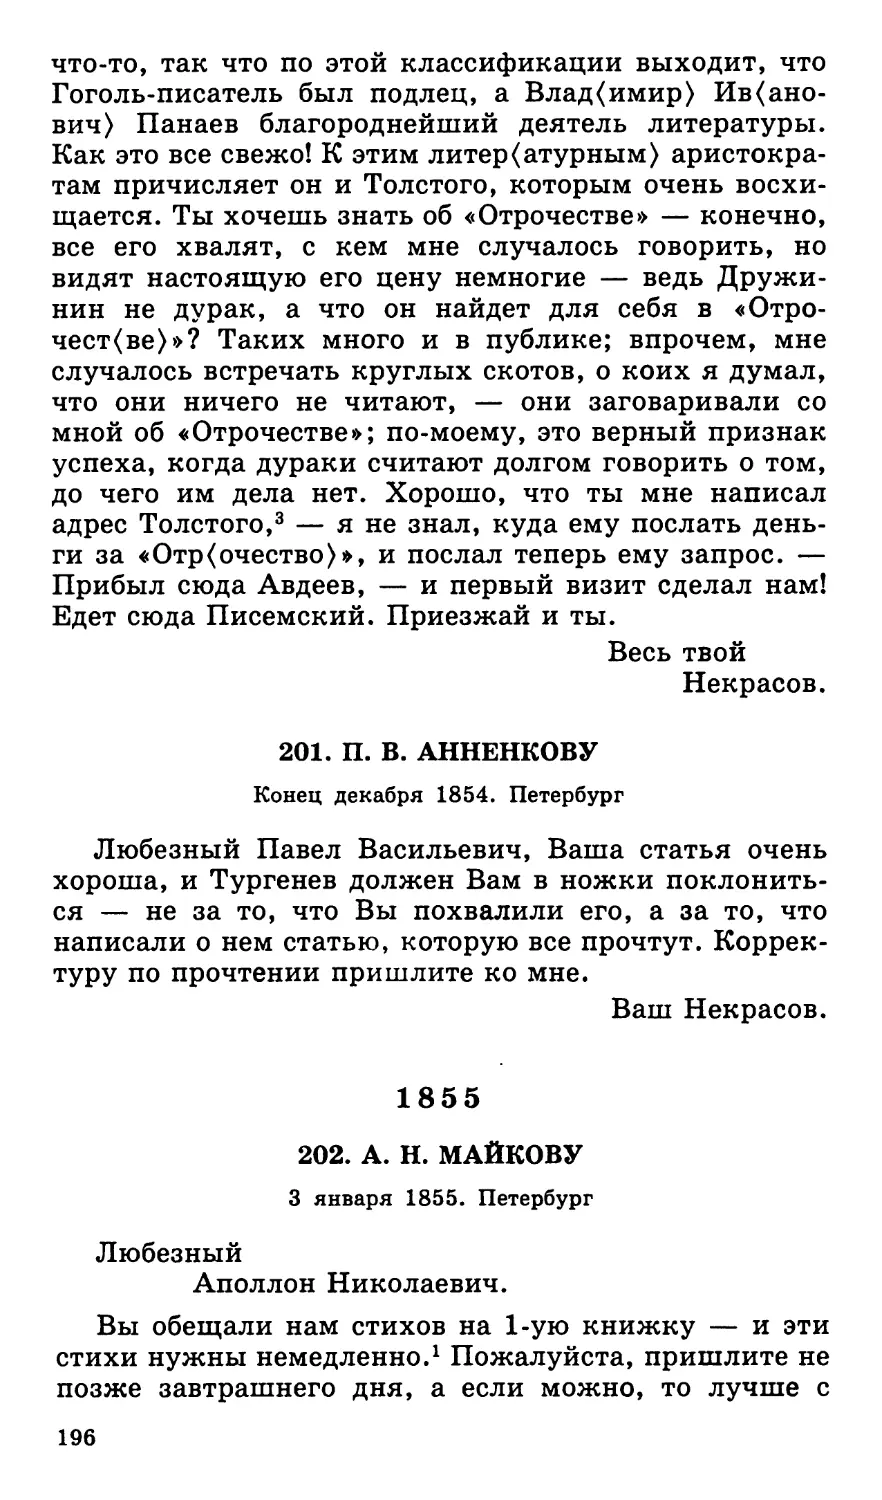 201. П. В. Анненкову. Конец декабря
1855